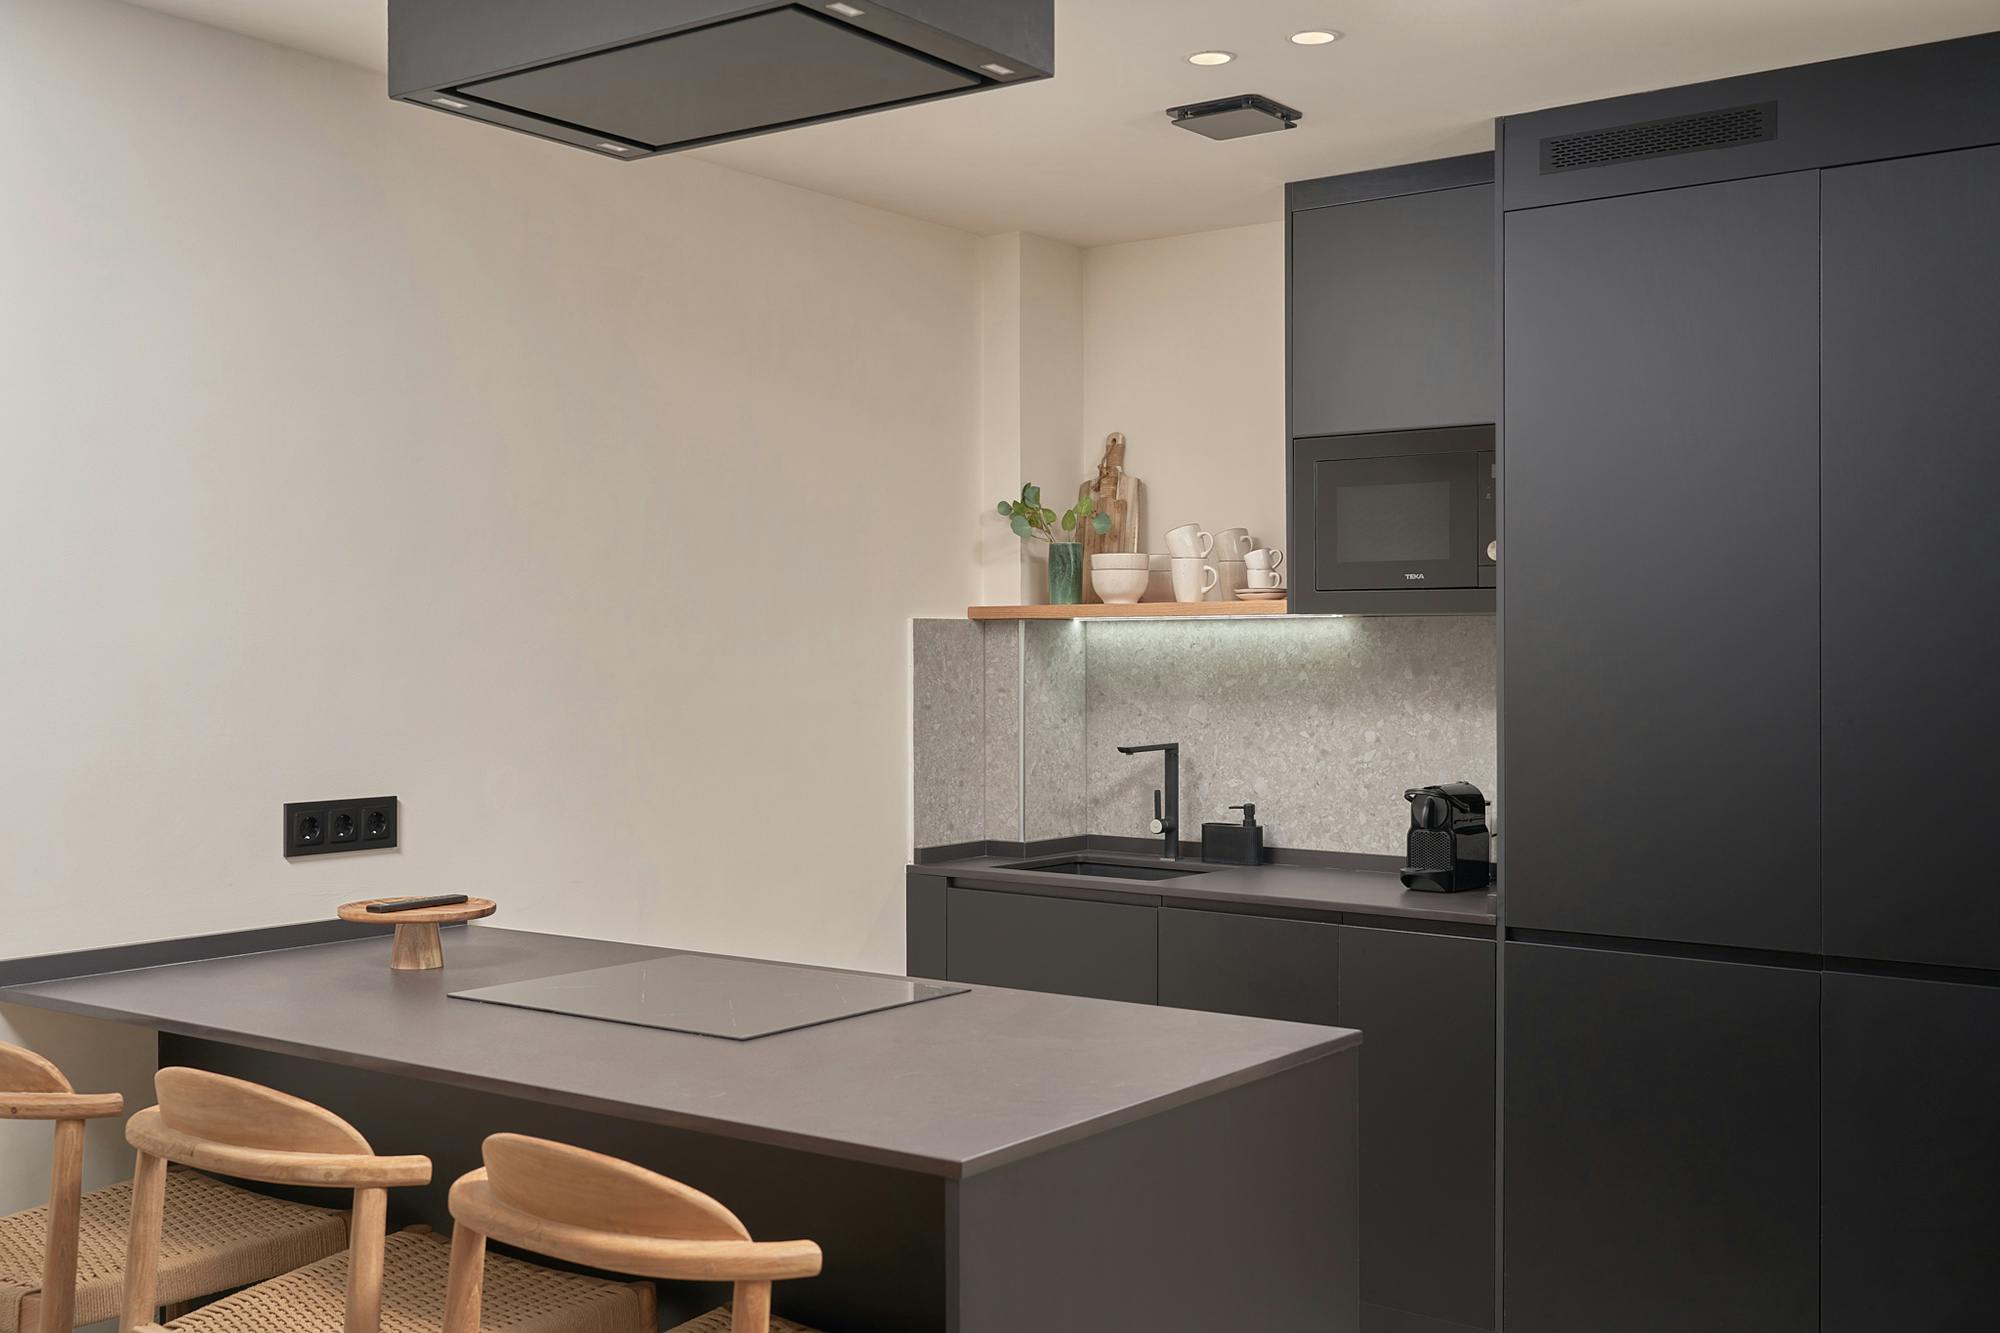 Numero immagine 36 della sezione corrente di DKTN Sirius adds a welcoming touch to the kitchens of a residential development in Dubai di Cosentino Italia